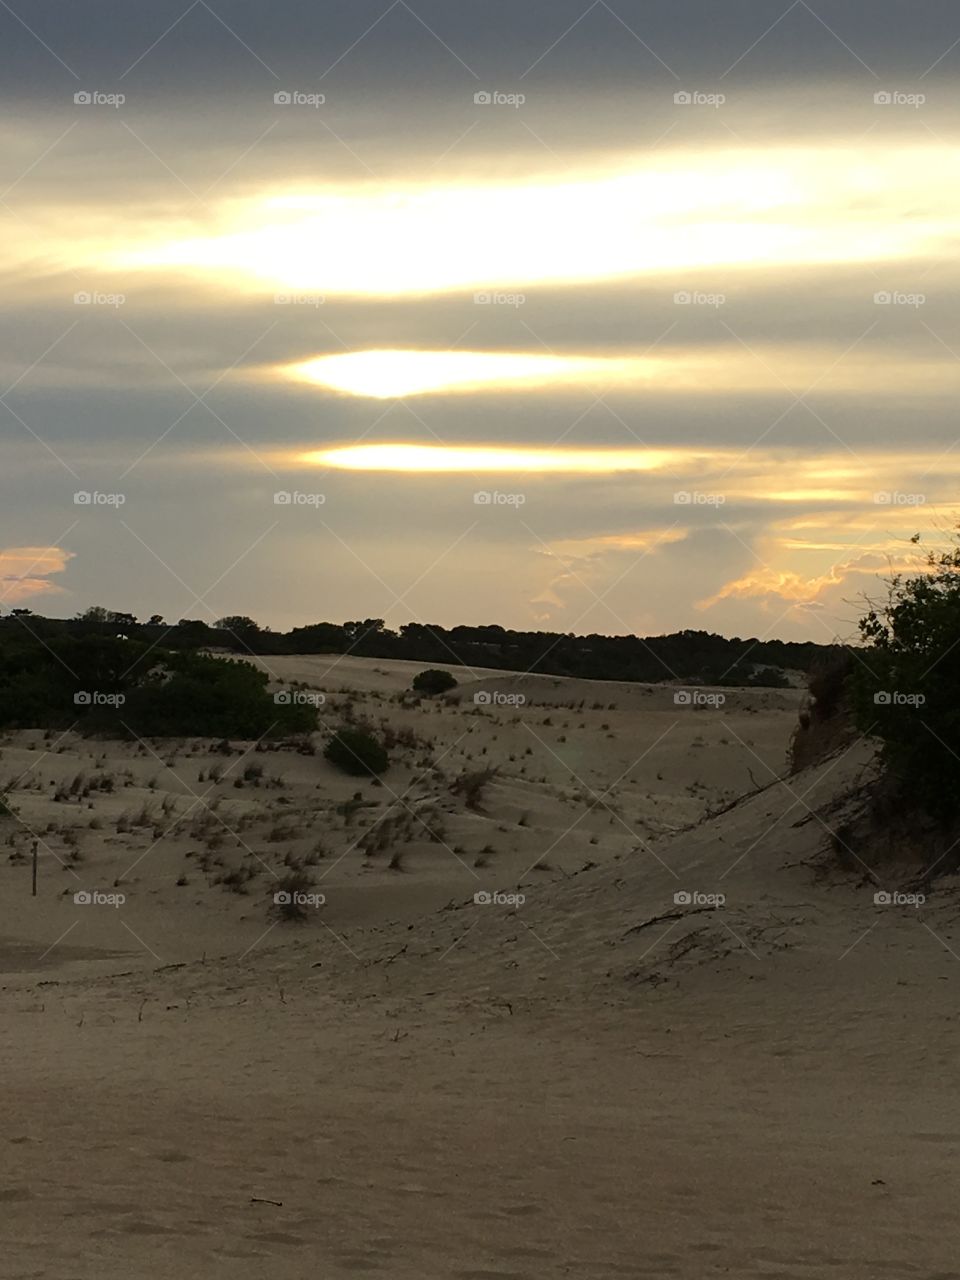 Sunset on sand dunes